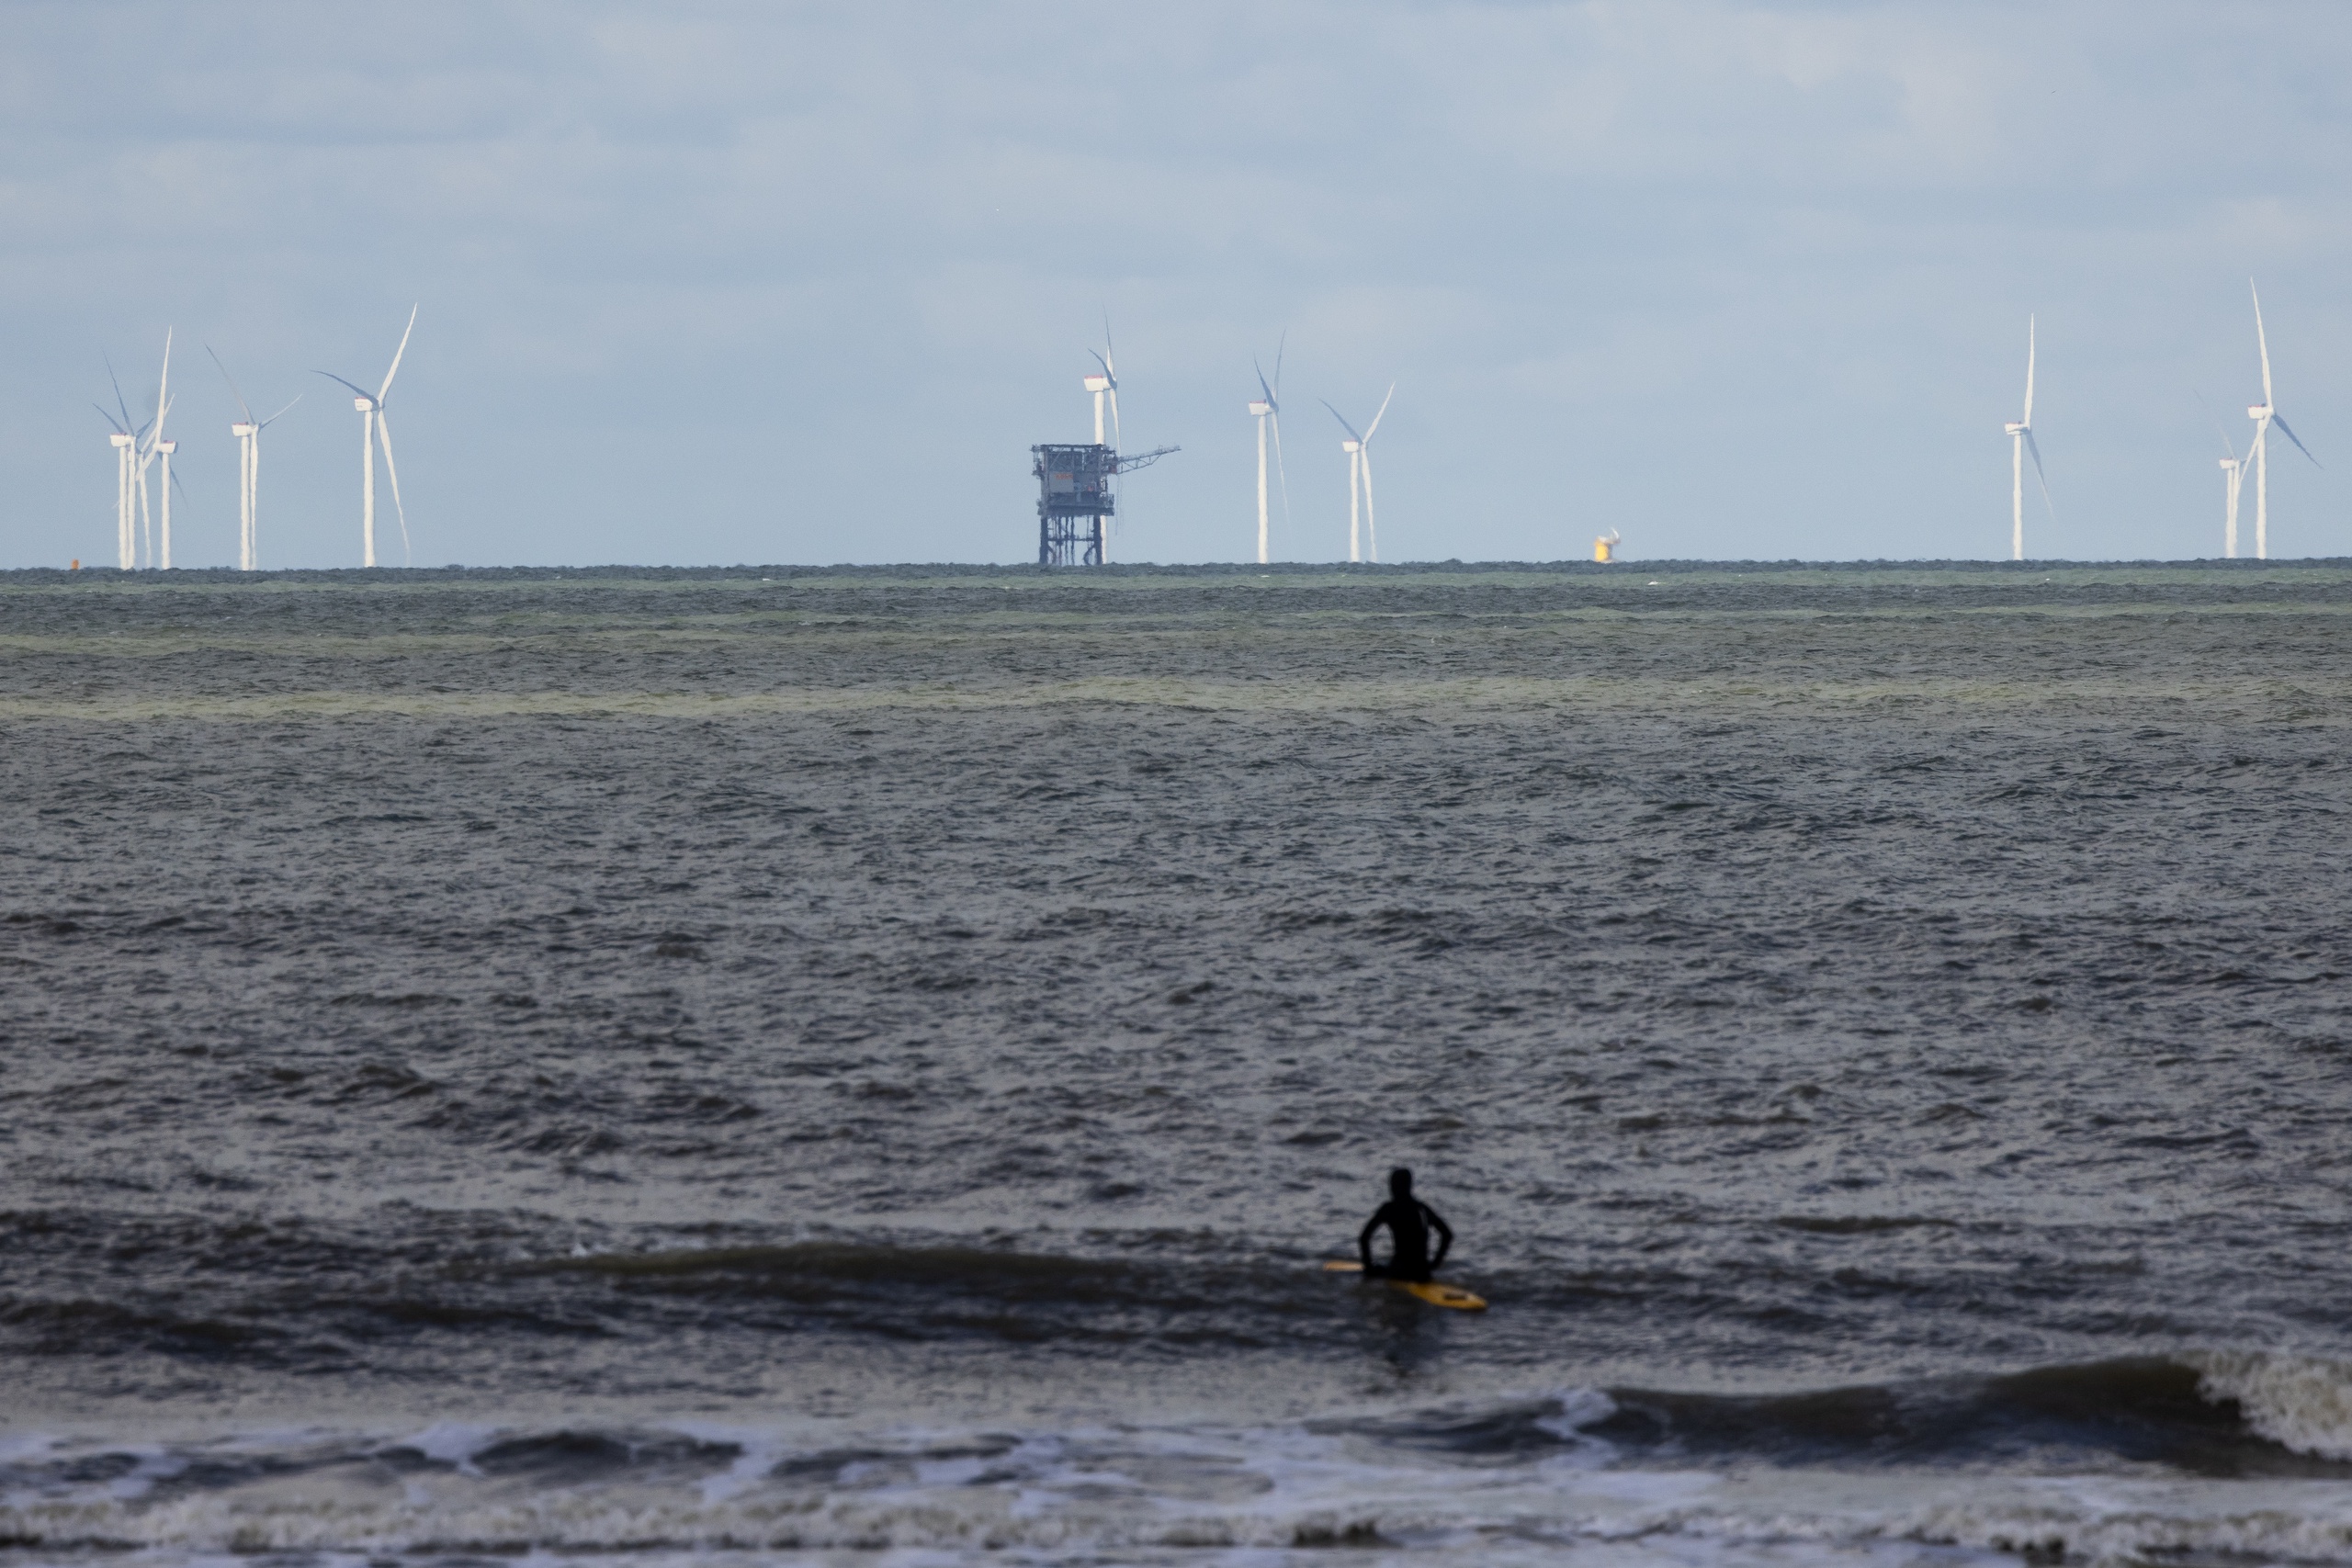 Netbeheerder TenneT gaat voor maar liefst 23 miljard euro investeren in een soort stopcontacten op zee, waarop grote windparken aangesloten kunnen worden. En dat is een flinke investering, stelt klimaat- en energieverslaggever Mark Beekhuis.